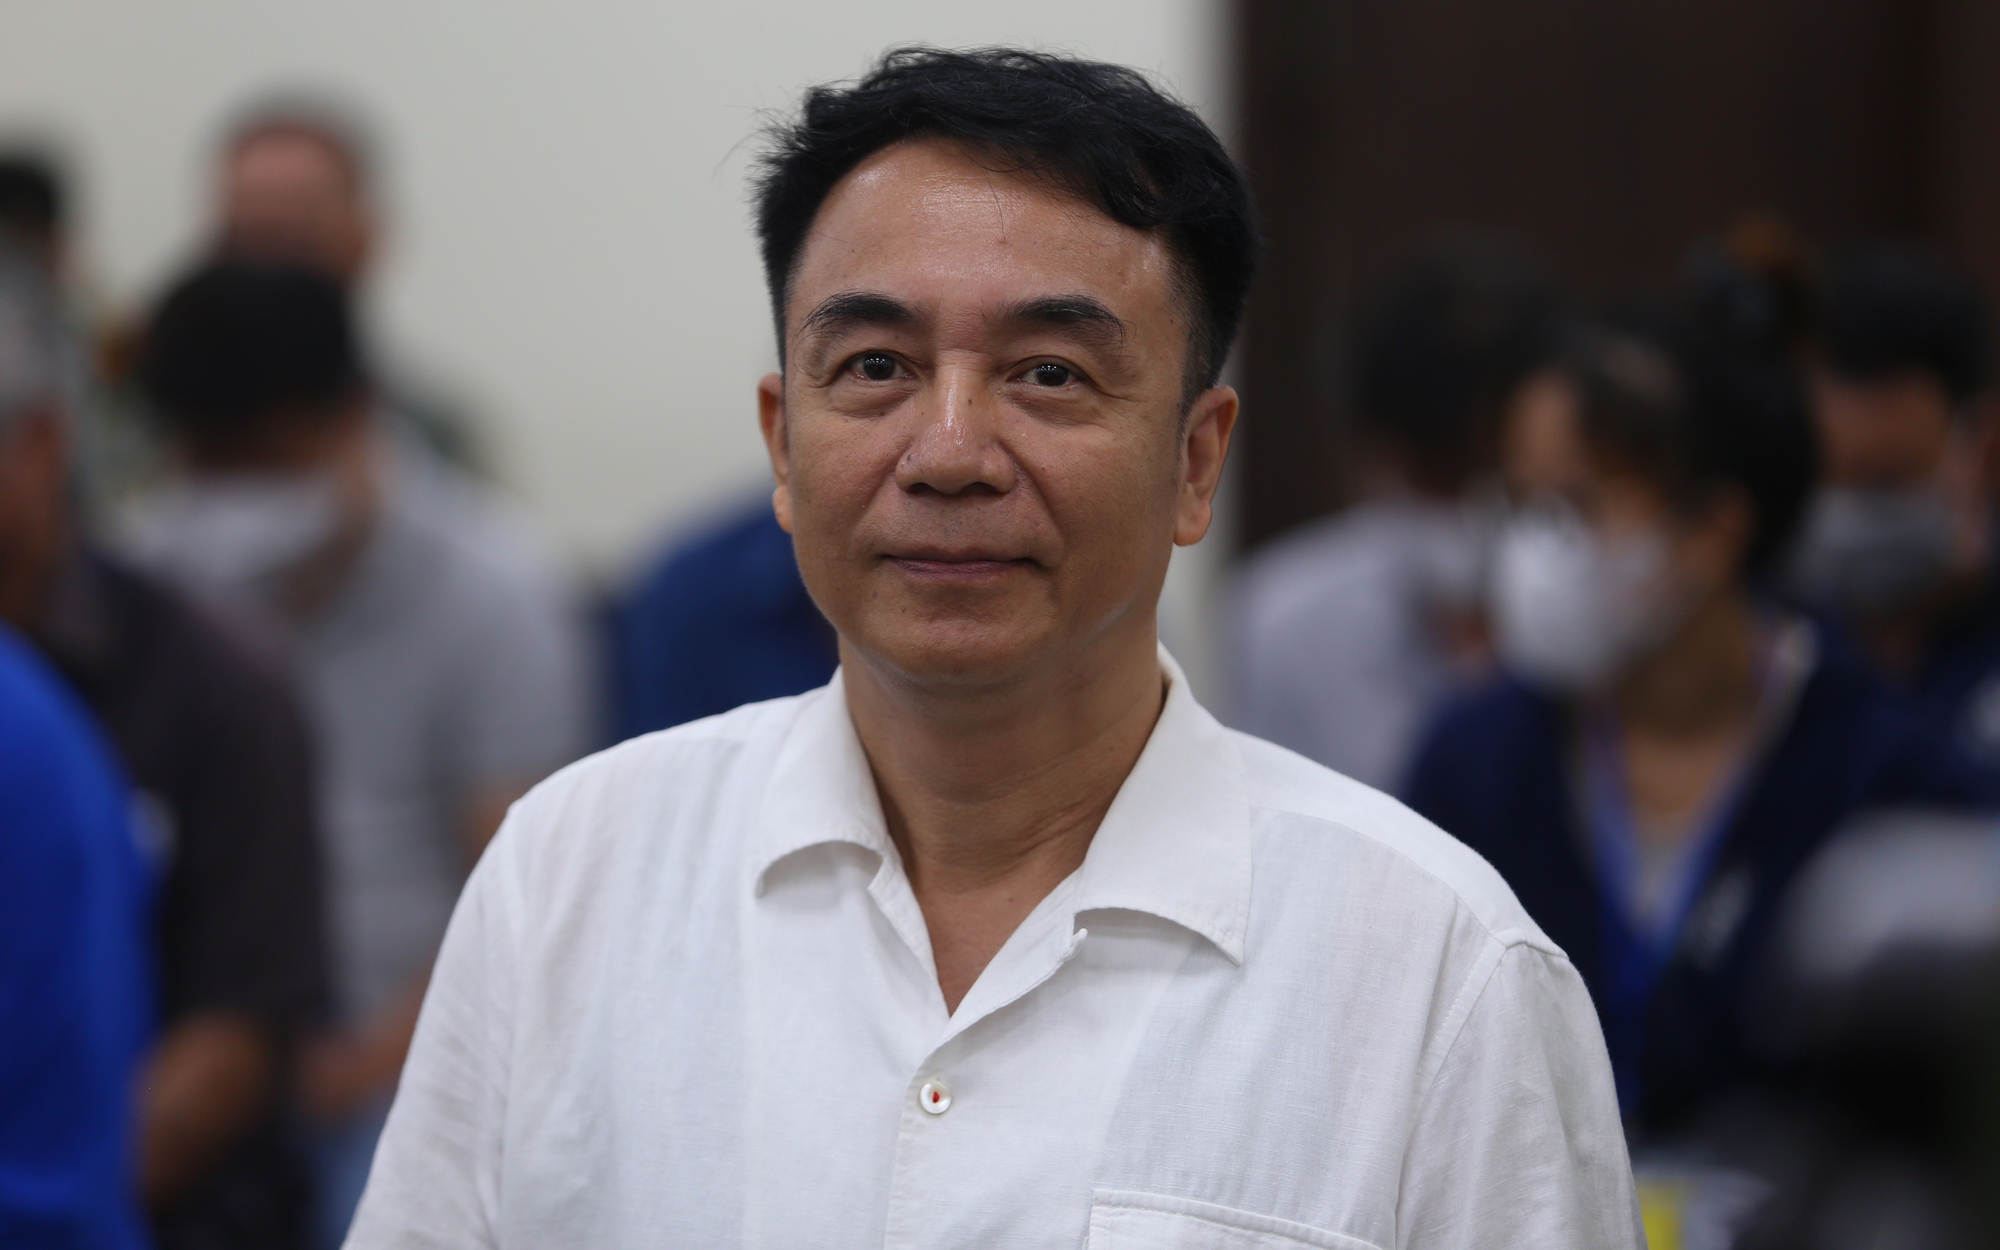 Cựu Cục phó Quản lý Thị trường Trần Hùng bị VKS đề nghị 9-10 năm tù